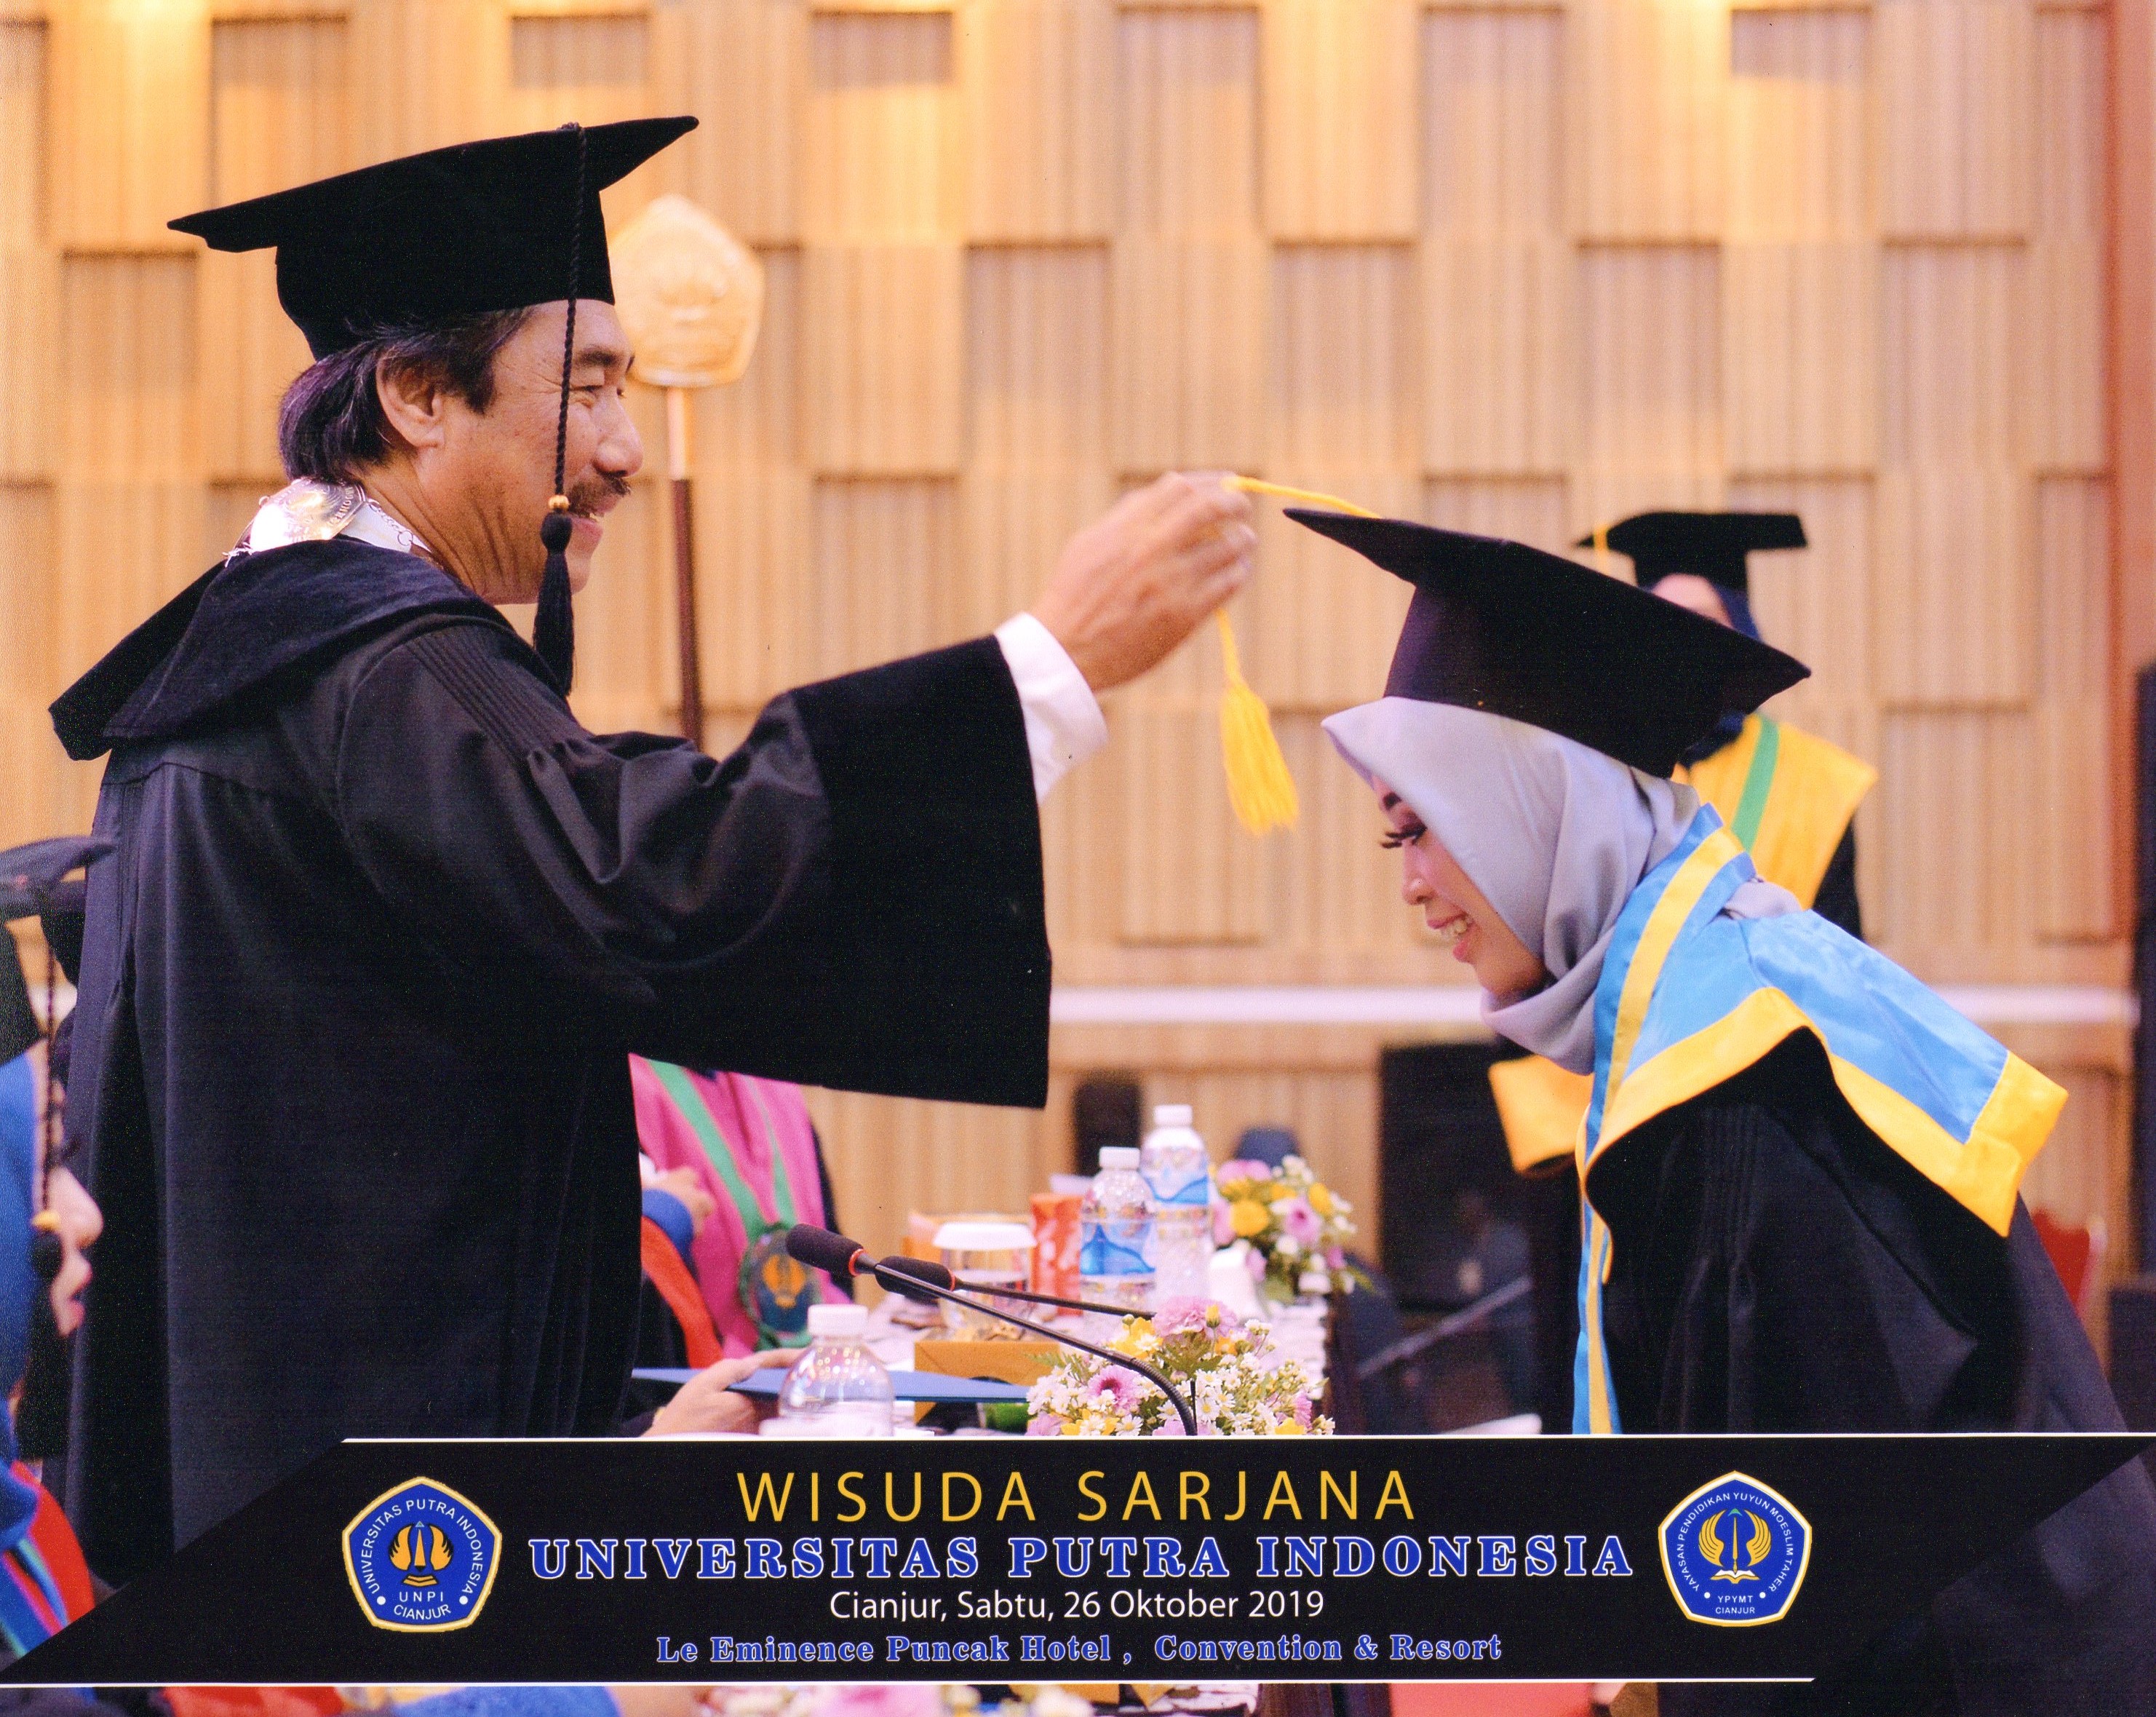 Ita receiving her degree in October 2019